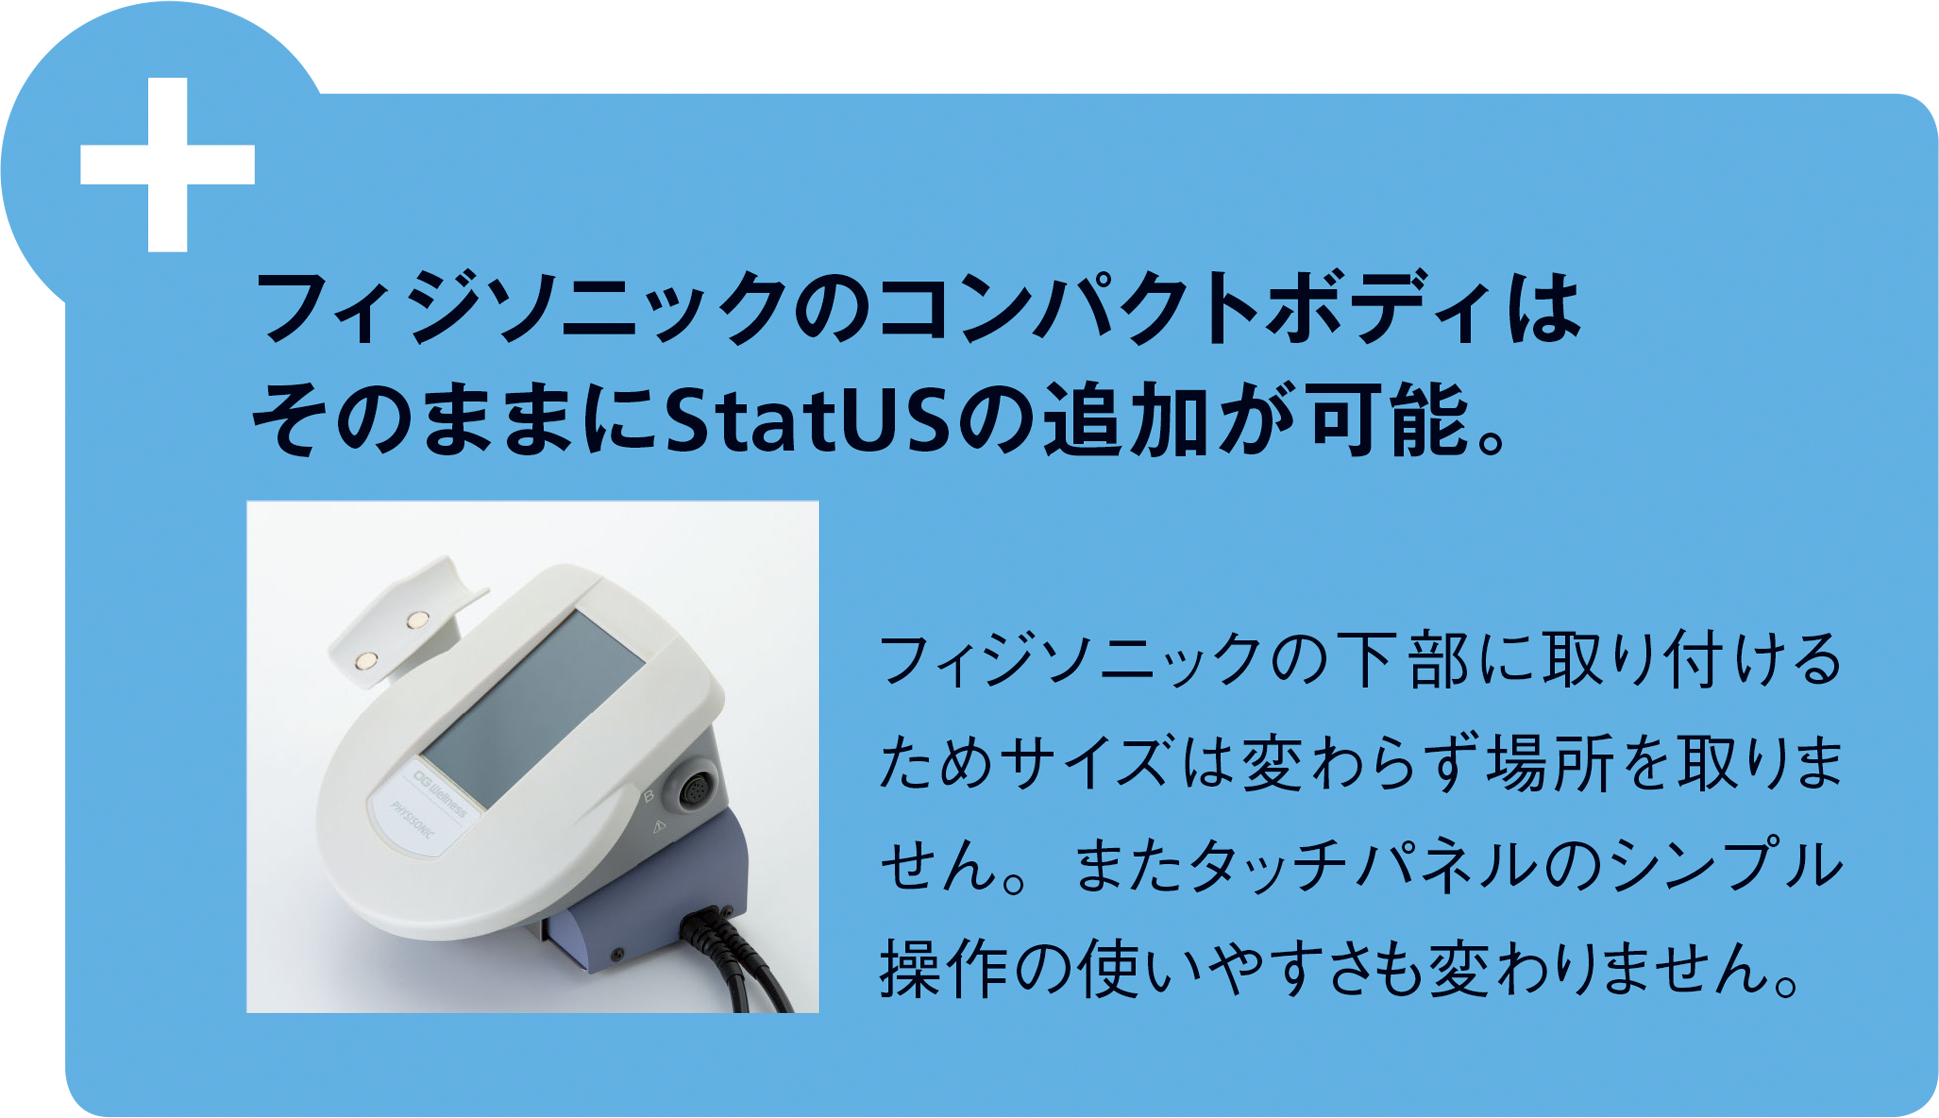 フィジソニックのコンパクトボディはそのままにStatUSの追加が可能。